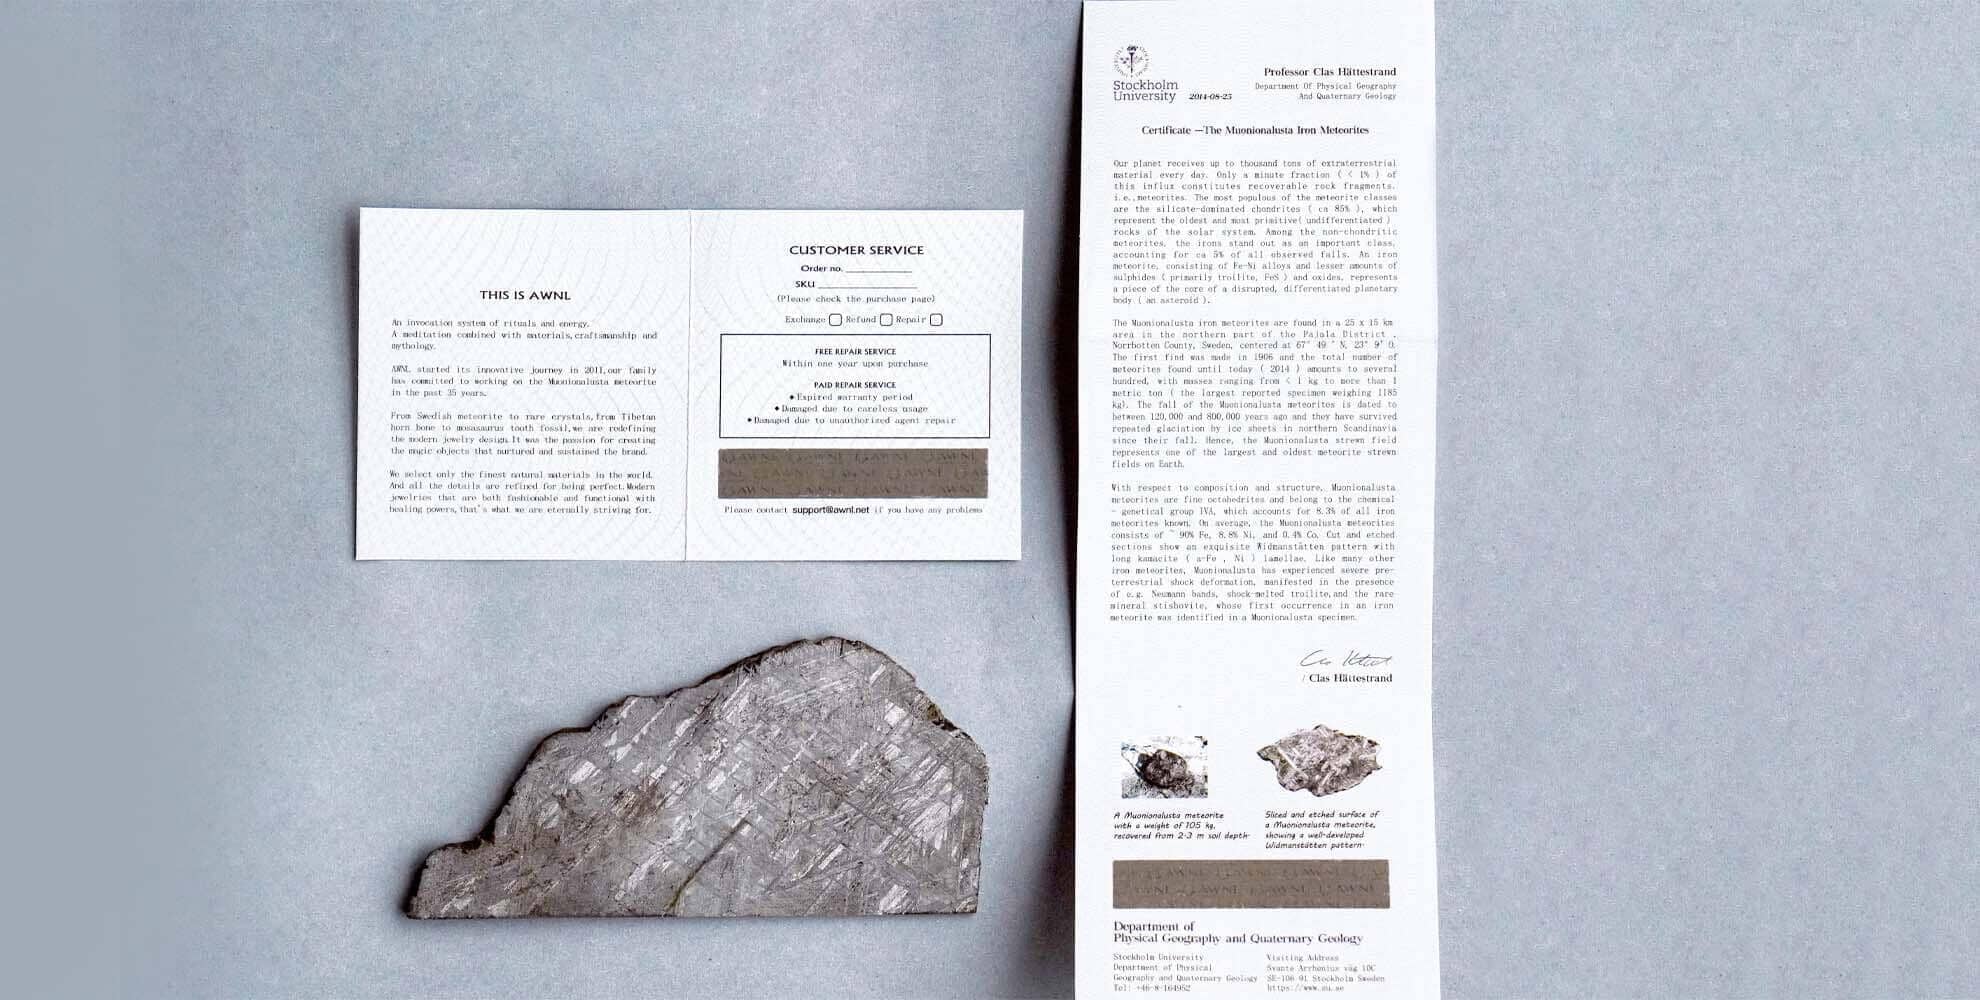 どこで良質な本物の隕石ジュリーが買えますか - ムオニオナルスタ隕石 - 天然石&隕石ジュエリーショップ - AWNL Japan